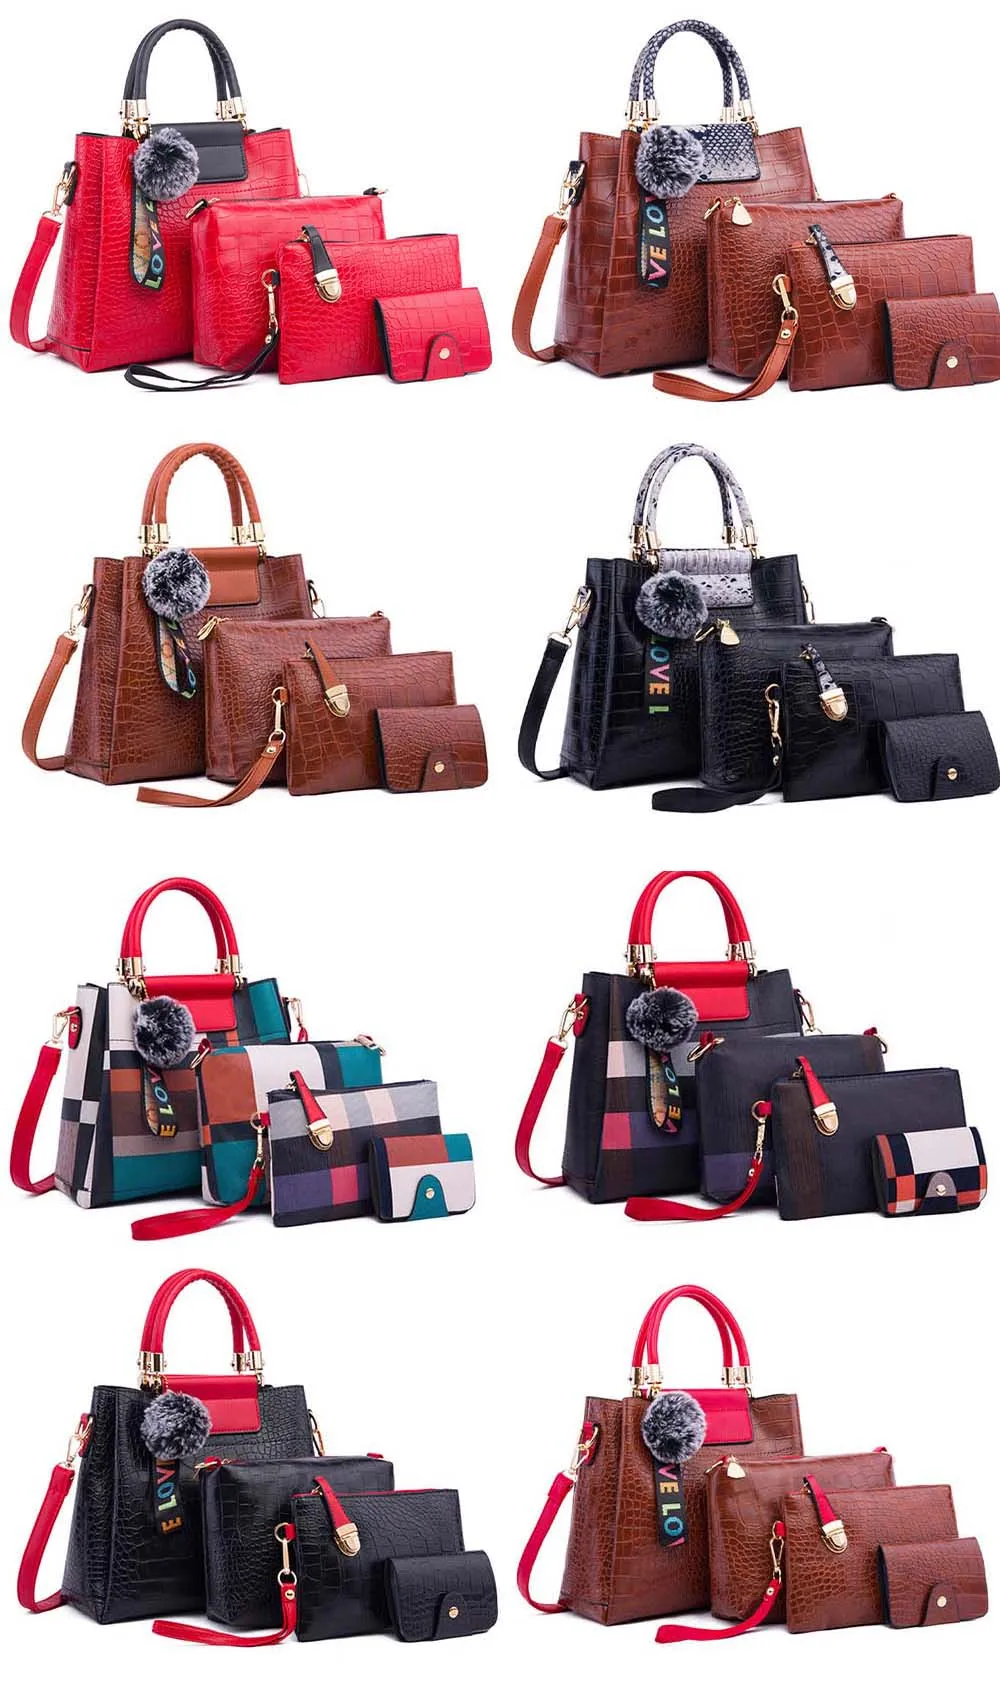 1 комплект/4 шт., повседневная женская сумка с клапаном, большая сумка-шоппер на плечо, Сумка с верхней ручкой, фирменный дизайн, модные женские роскошные сумки